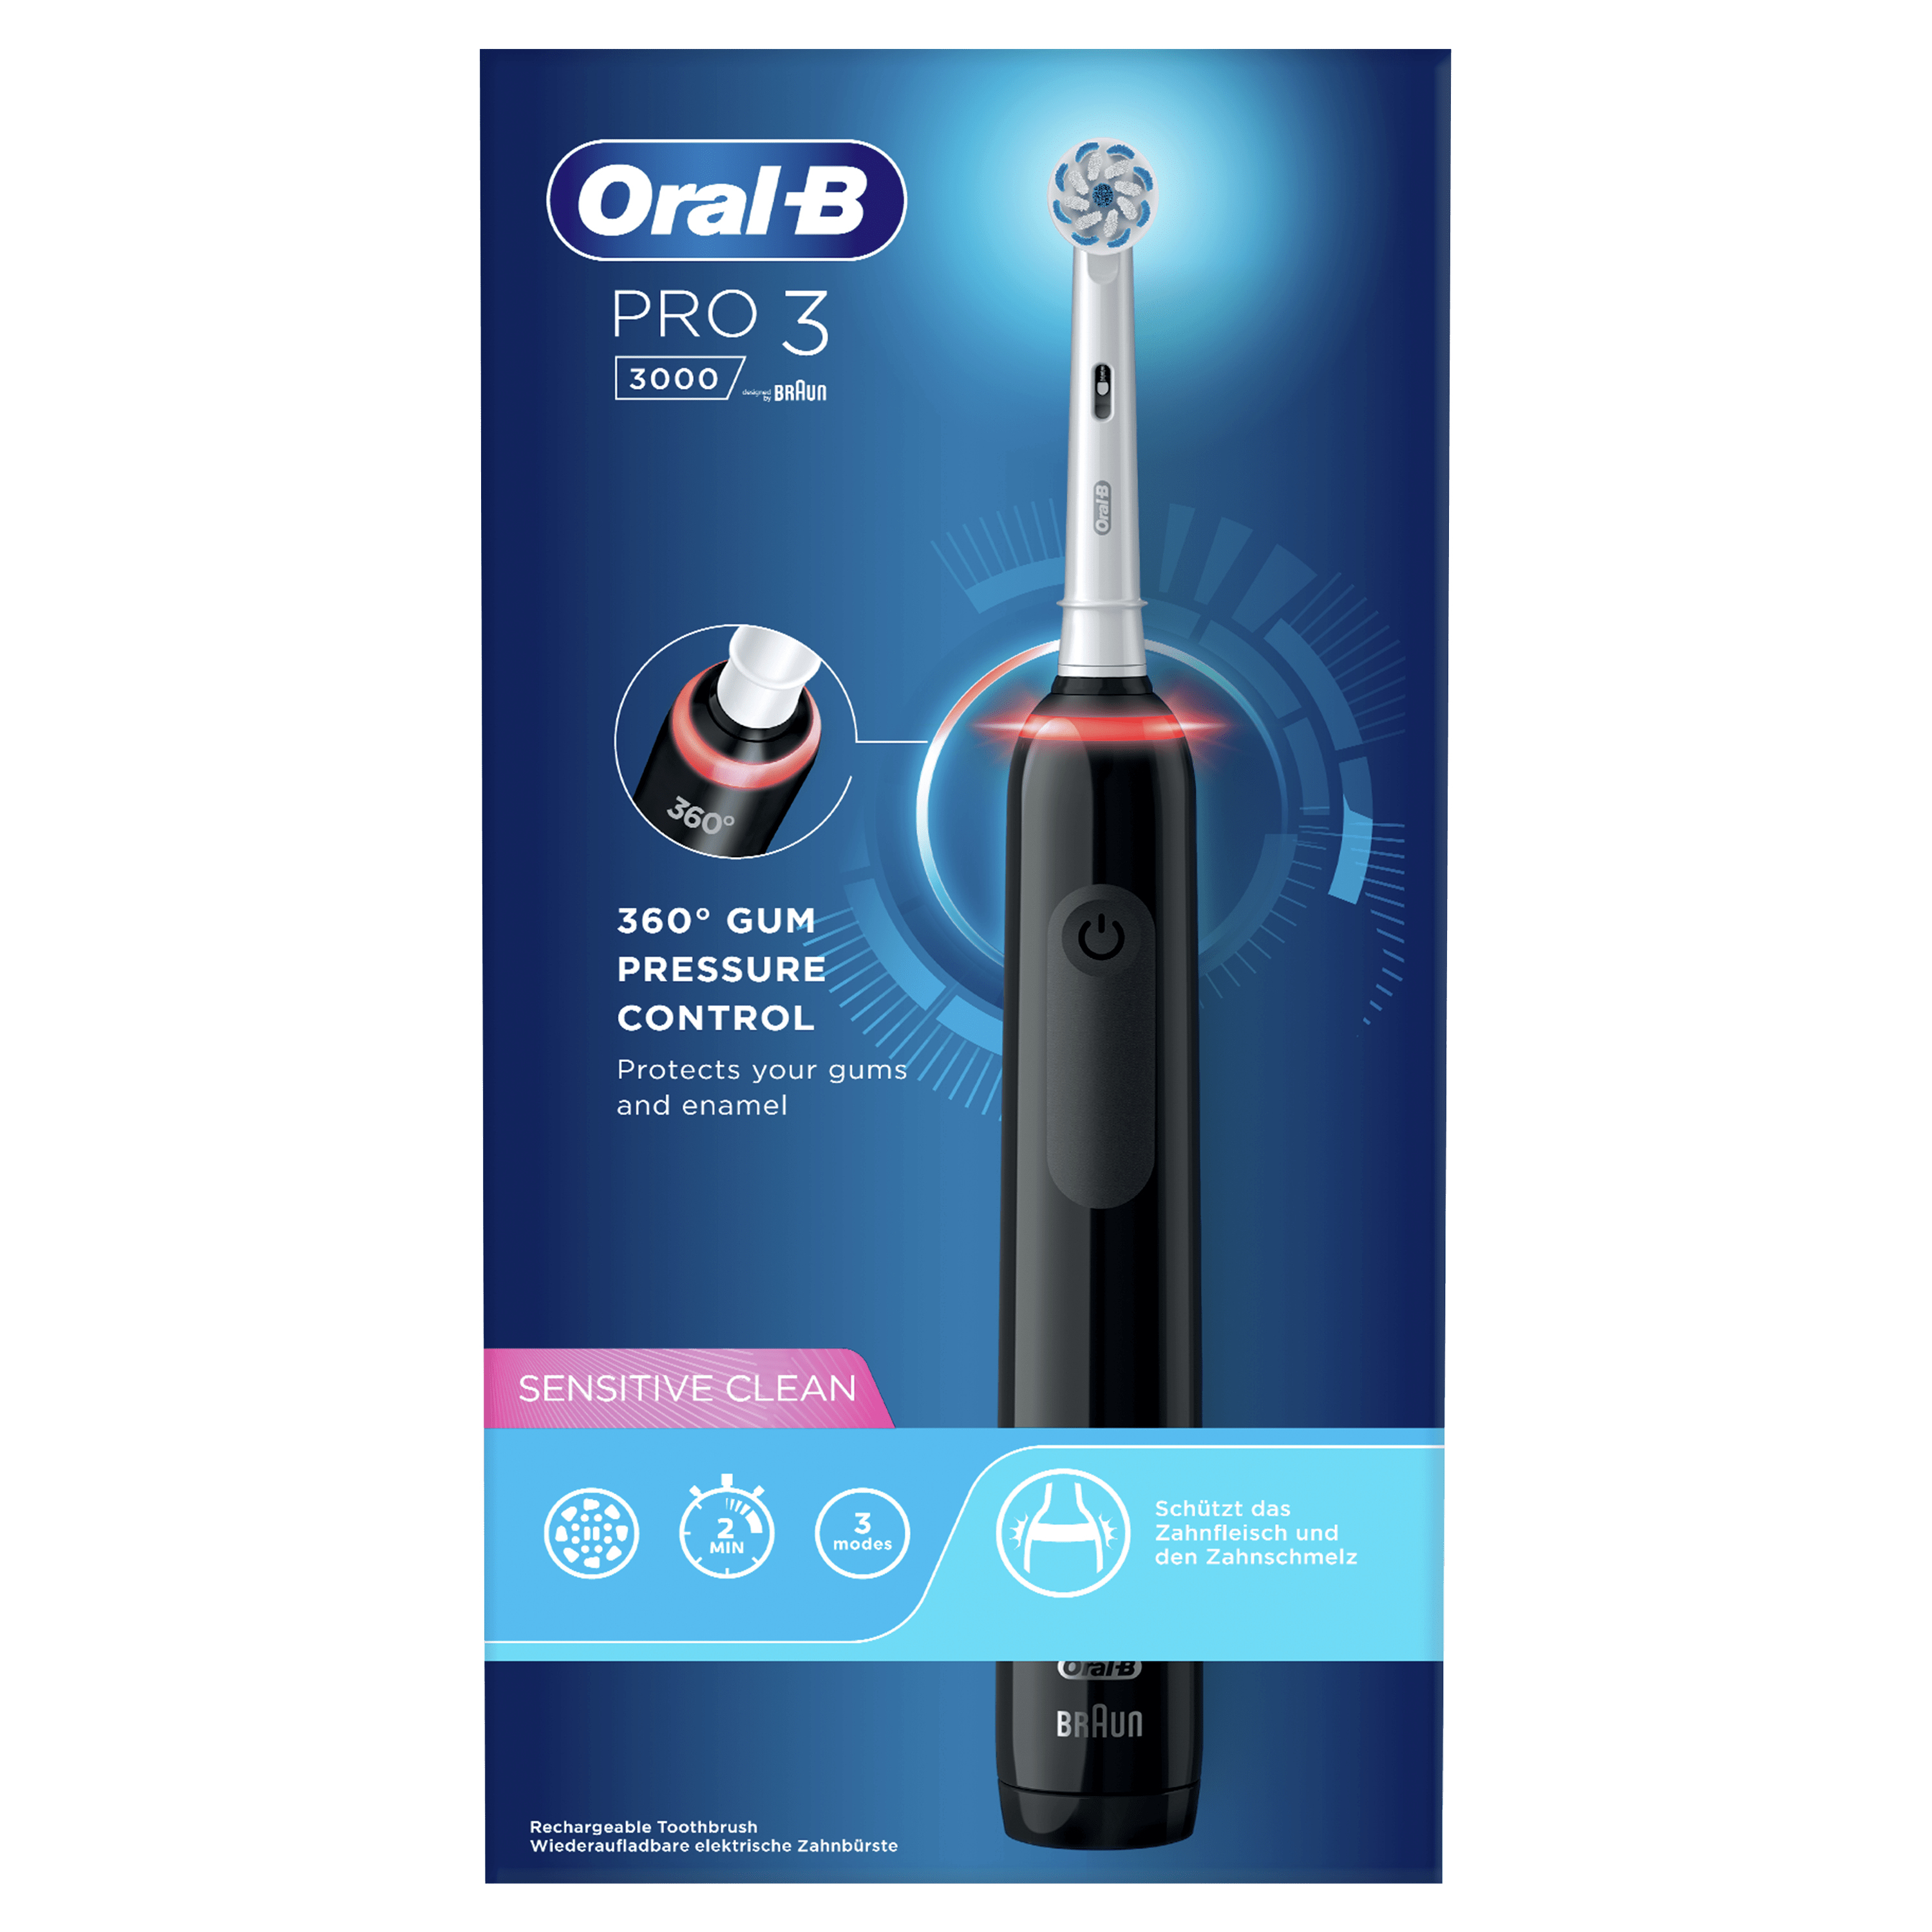 Oral-B Oral-B Pro 3 - 3000 - Zwarte Elektrische Tandenborstel Ontworpen Door Braun